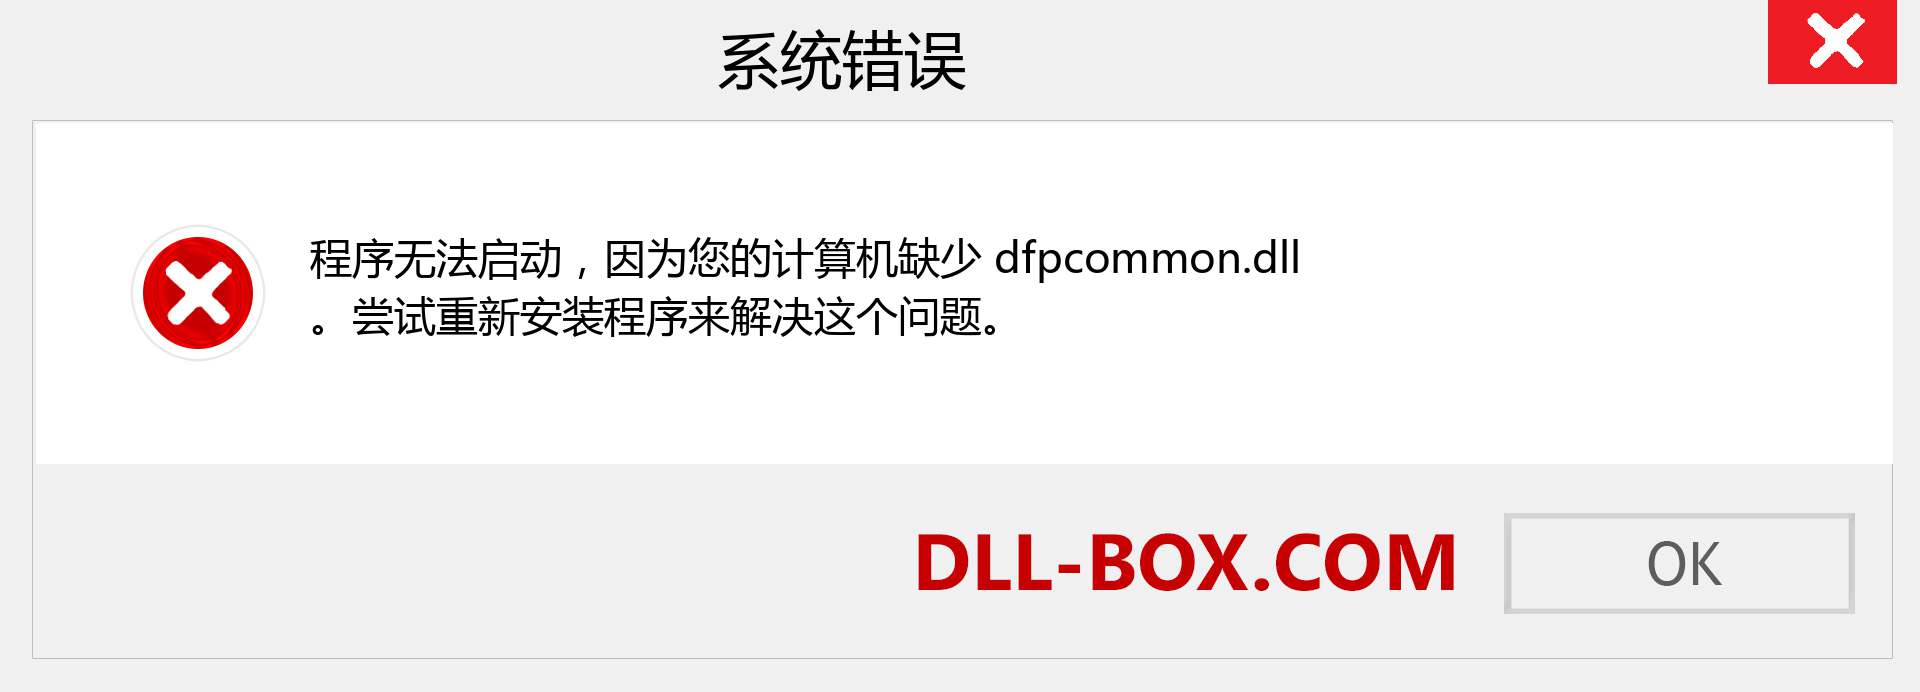 dfpcommon.dll 文件丢失？。 适用于 Windows 7、8、10 的下载 - 修复 Windows、照片、图像上的 dfpcommon dll 丢失错误